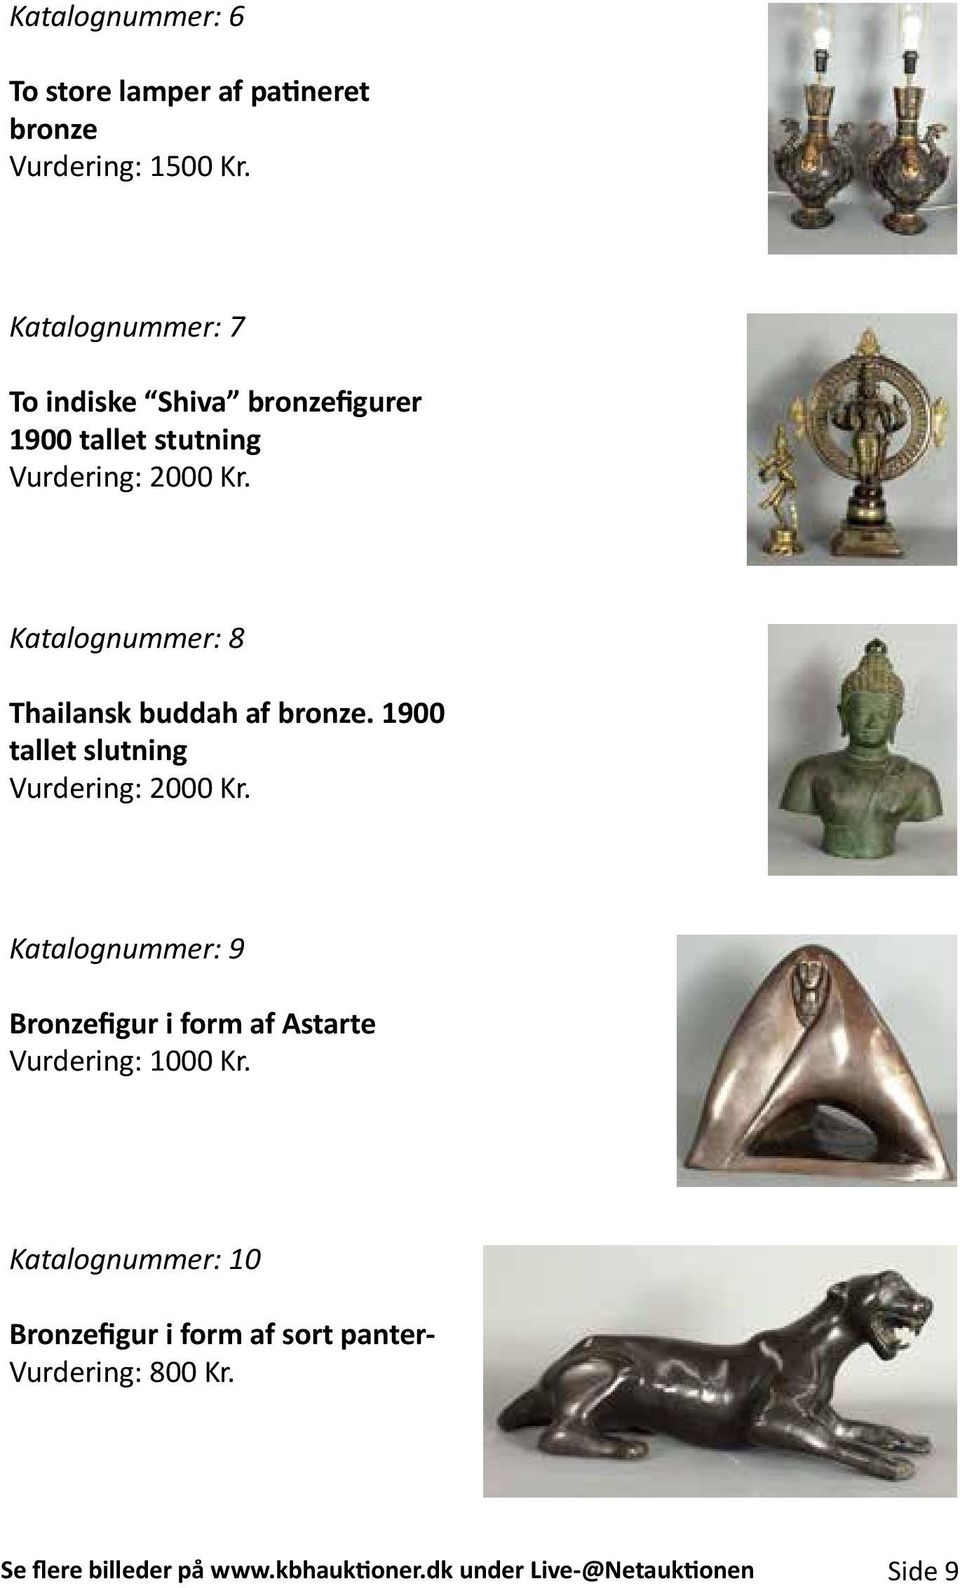 Katalognummer: 8 Thailansk buddah af bronze. 1900 tallet slutning Vurdering: 2000 Kr.